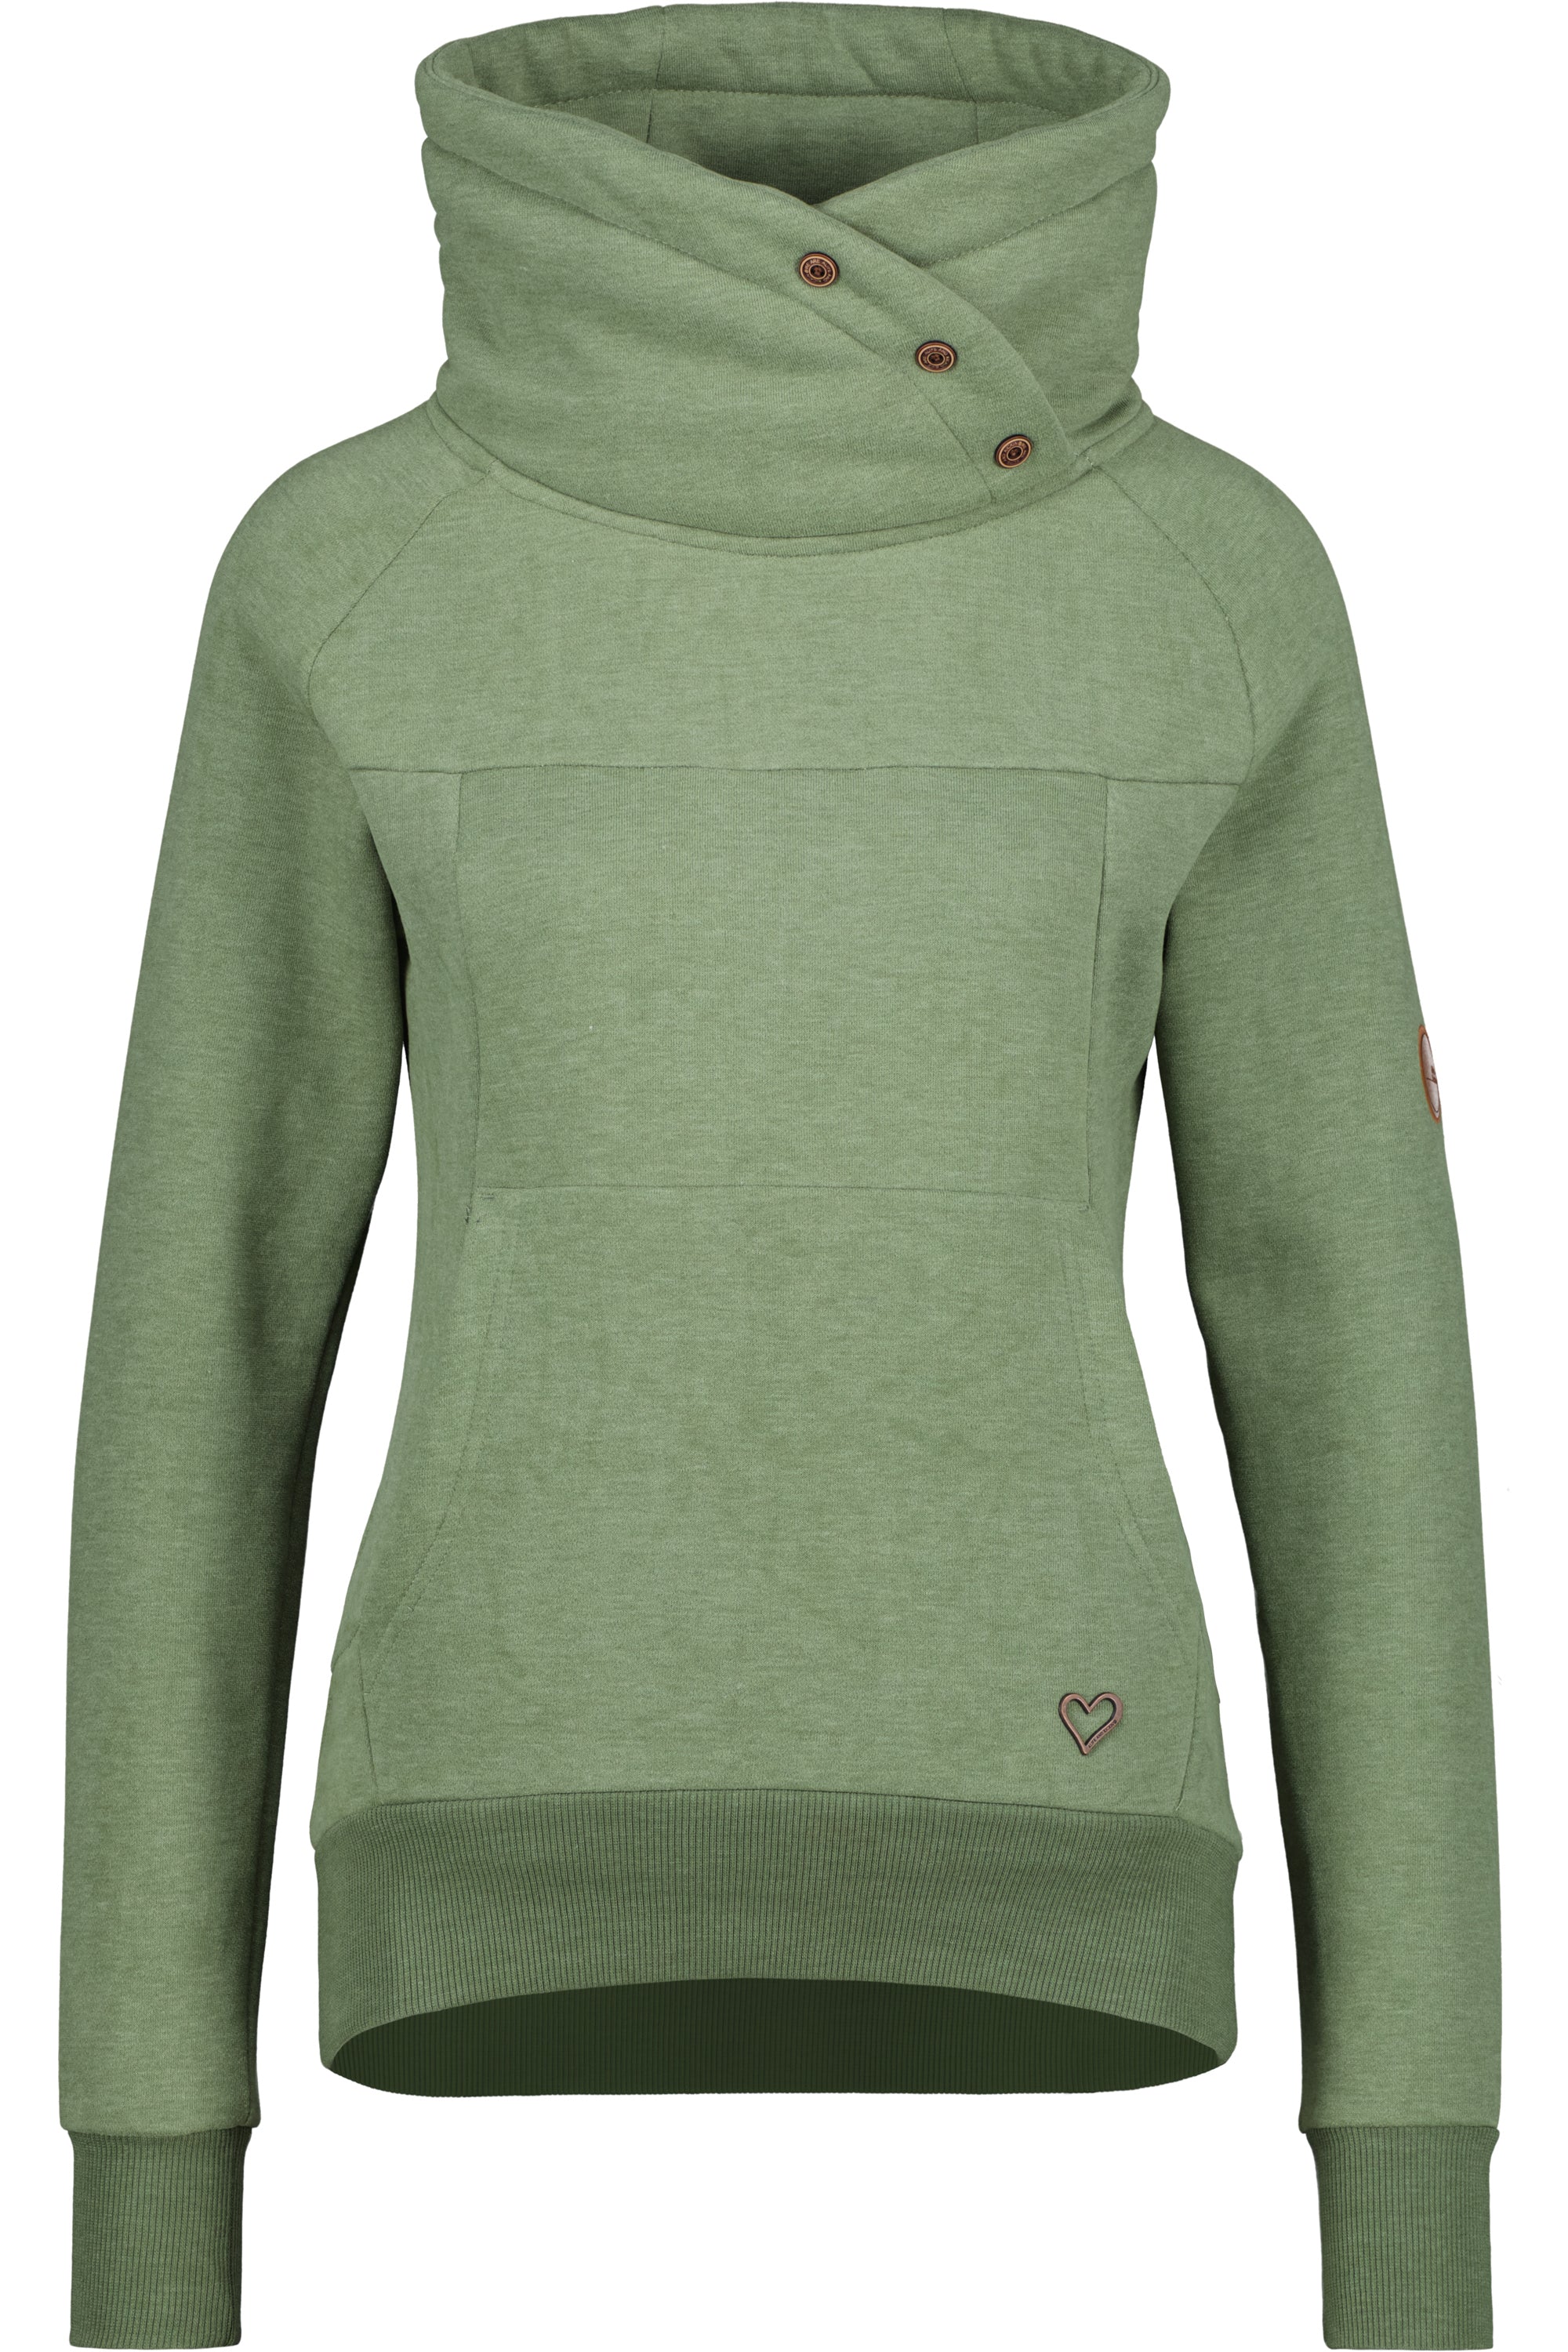 VioletAK A Stylishes Damen-Sweatshirt für das ganze Jahr Grün